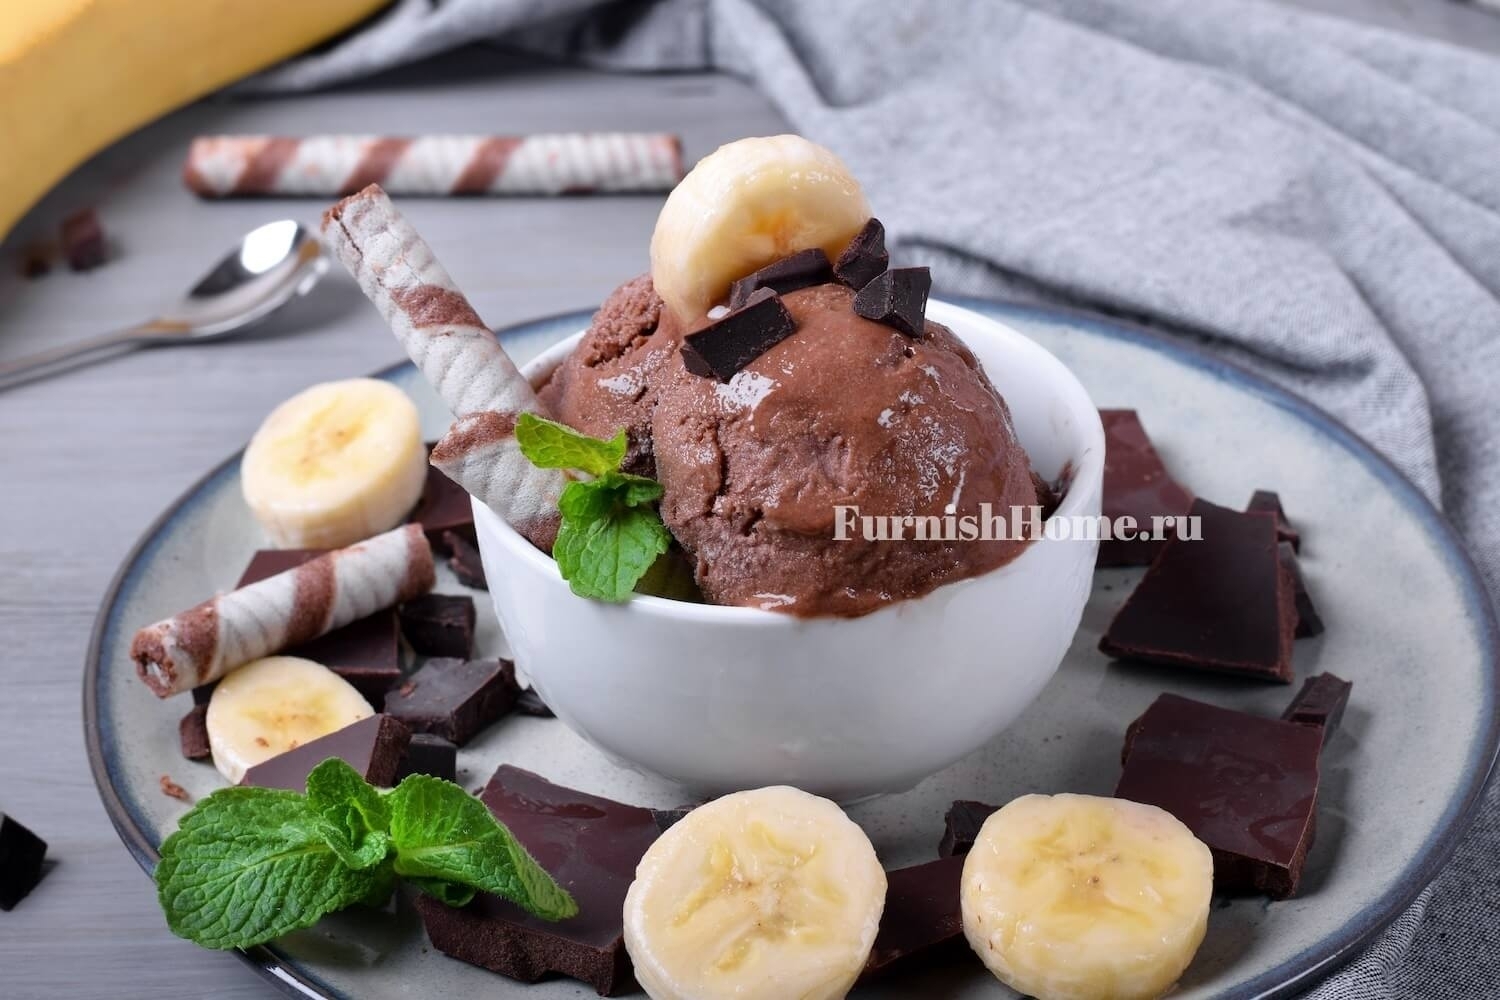 Бананово-шоколадное мороженое с ликером Бейлис